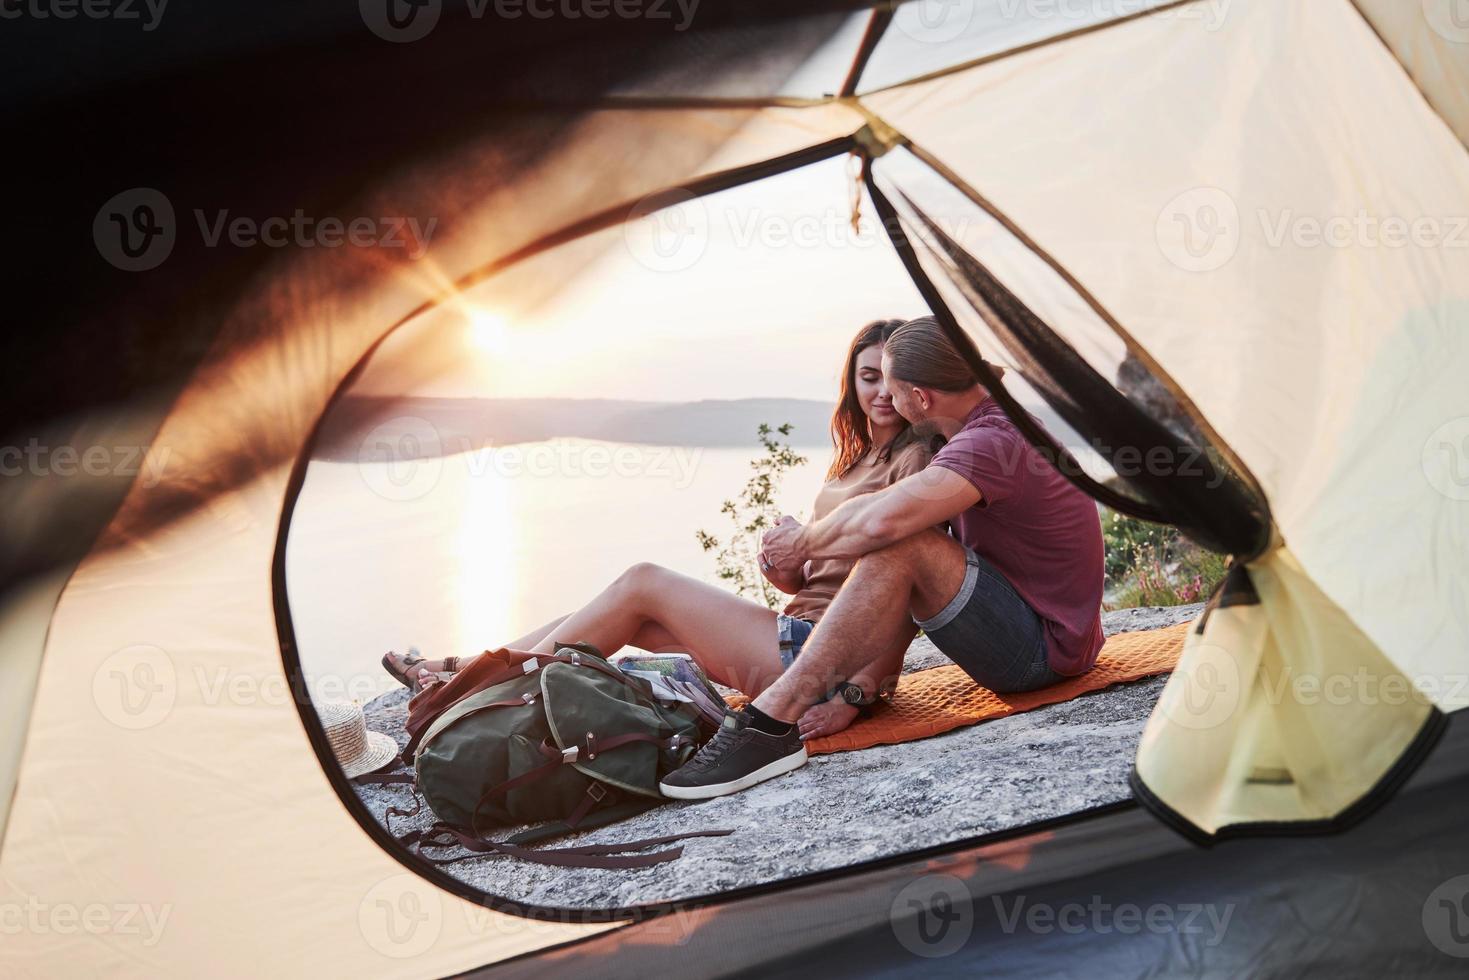 uitzicht vanuit tent van paar liggend op het meer tijdens wandeltocht. avel lifestyle concept avontuurlijke vakanties buiten foto